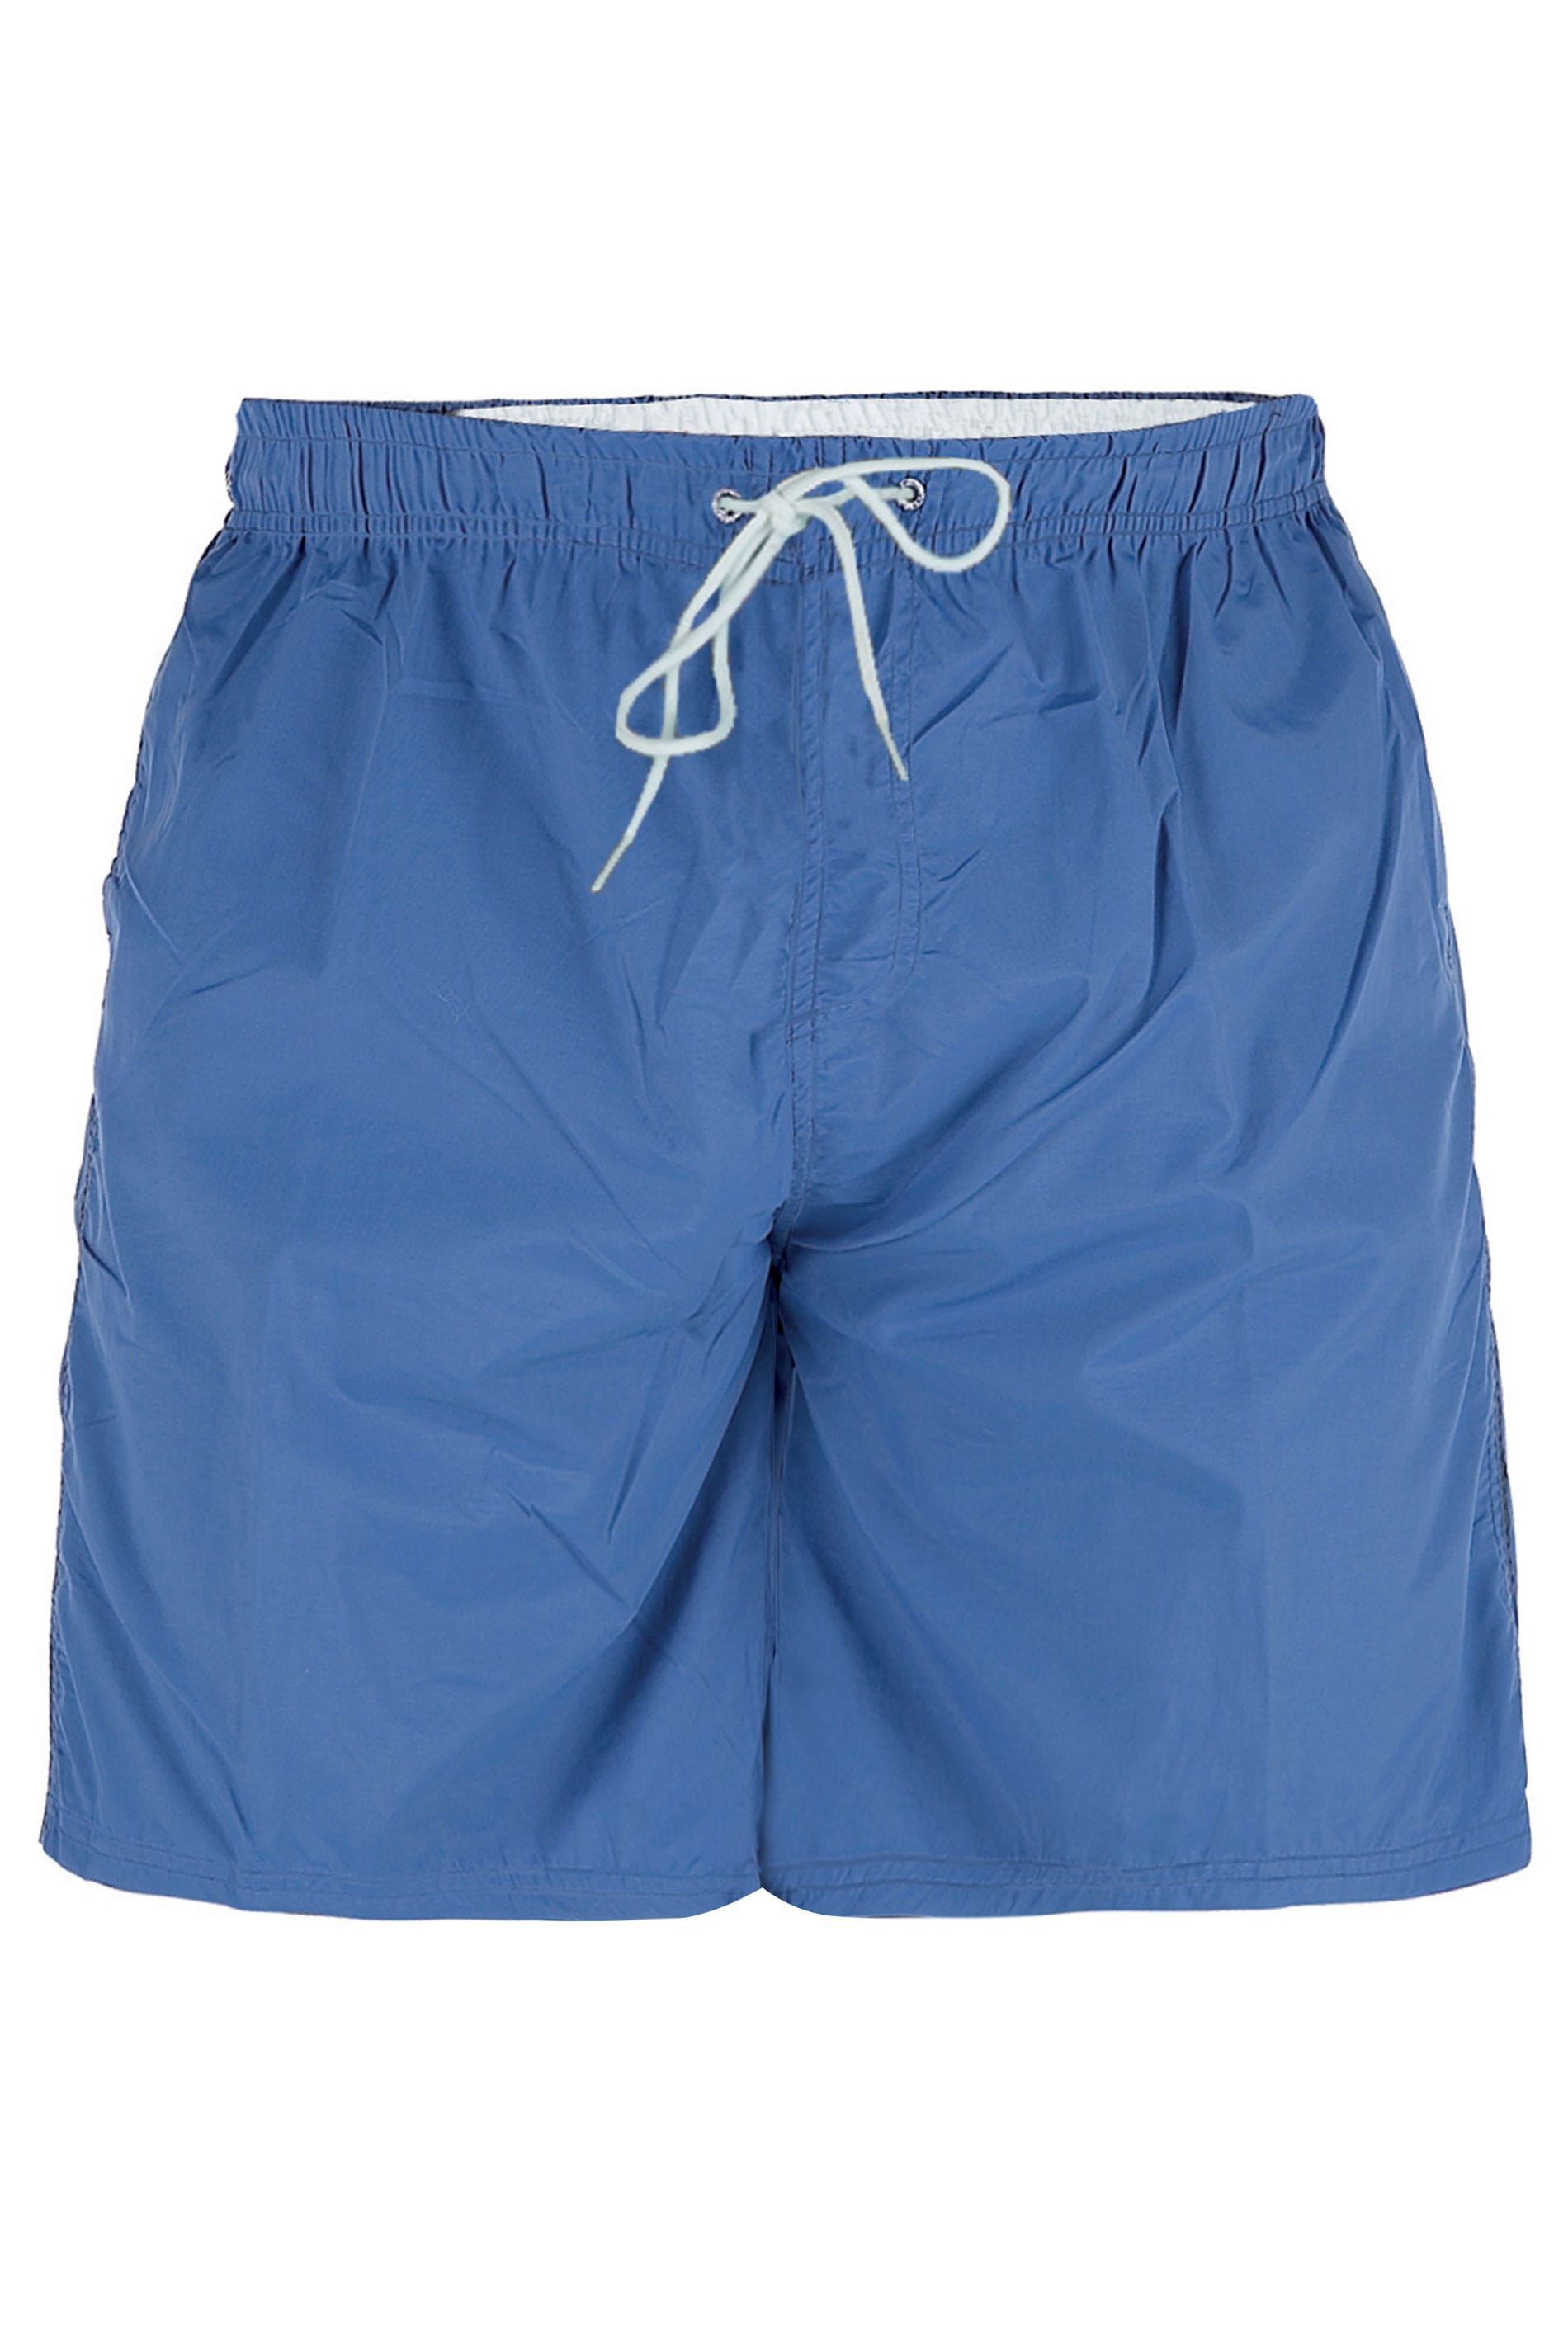 D555 Royal Blue Swim Shorts | BadRhino